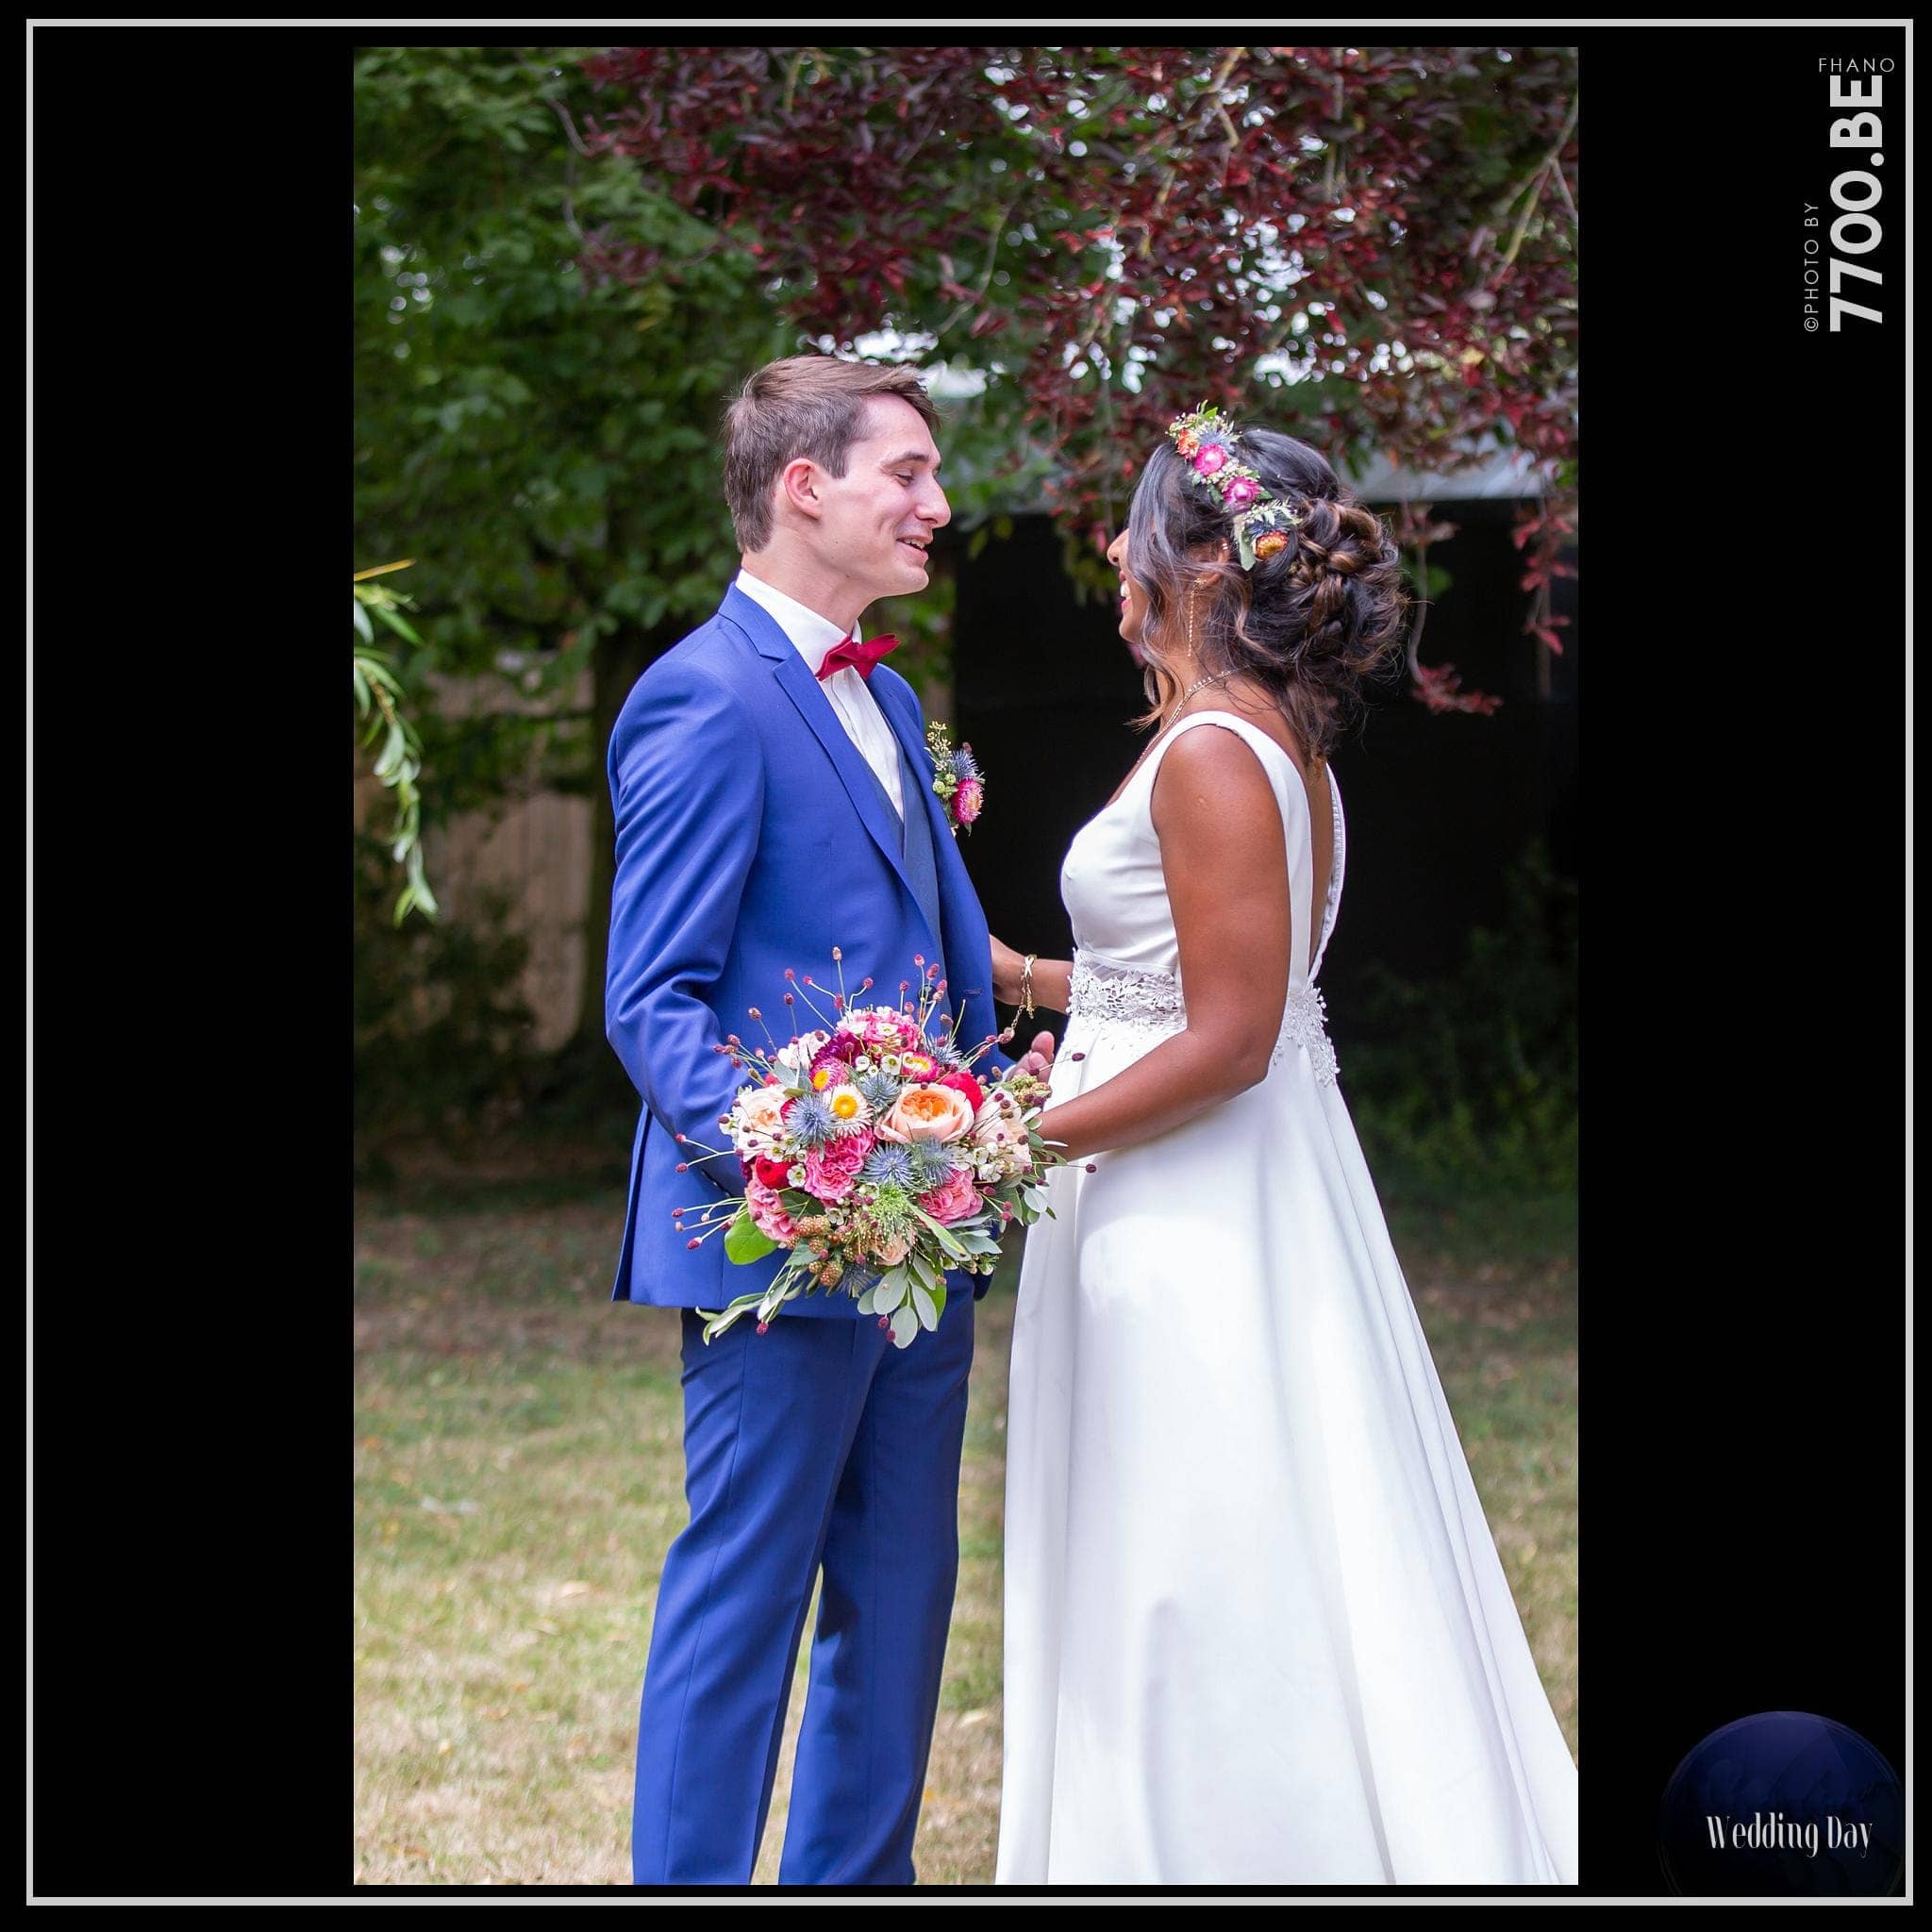 Quelques images issues du mariage réalisé par le 𝚂𝚝𝚞𝚍𝚒𝚘 𝟽𝟽𝟶𝟶.𝙱𝙴 𝙲𝚑𝚎𝚣 𝙵𝚑𝚊𝚗𝚘.𝚎𝚞 𝑃ℎ𝑜𝑡𝑜𝑠 📷 𝑉𝑖𝑑𝑒𝑜 🎥 𝐷𝑟𝑜𝑛e 『*****』 📸 FHANO 𝕡𝕙𝕠𝕥𝕠𝕘𝕣𝕒𝕡𝕙𝕖 & 𝕧𝕚𝕕é𝕠 🎥 CARO 𝕣𝕦𝕤𝕙 𝕧𝕚𝕕é𝕠 & 𝕡𝕙𝕠𝕥𝕠 💎👉 𝕤𝕥𝕦𝕕𝕚𝕠 𝟟𝟟𝟘𝟘.𝔹𝔼 👈💎 https://mon-photographe-de-mariage.com